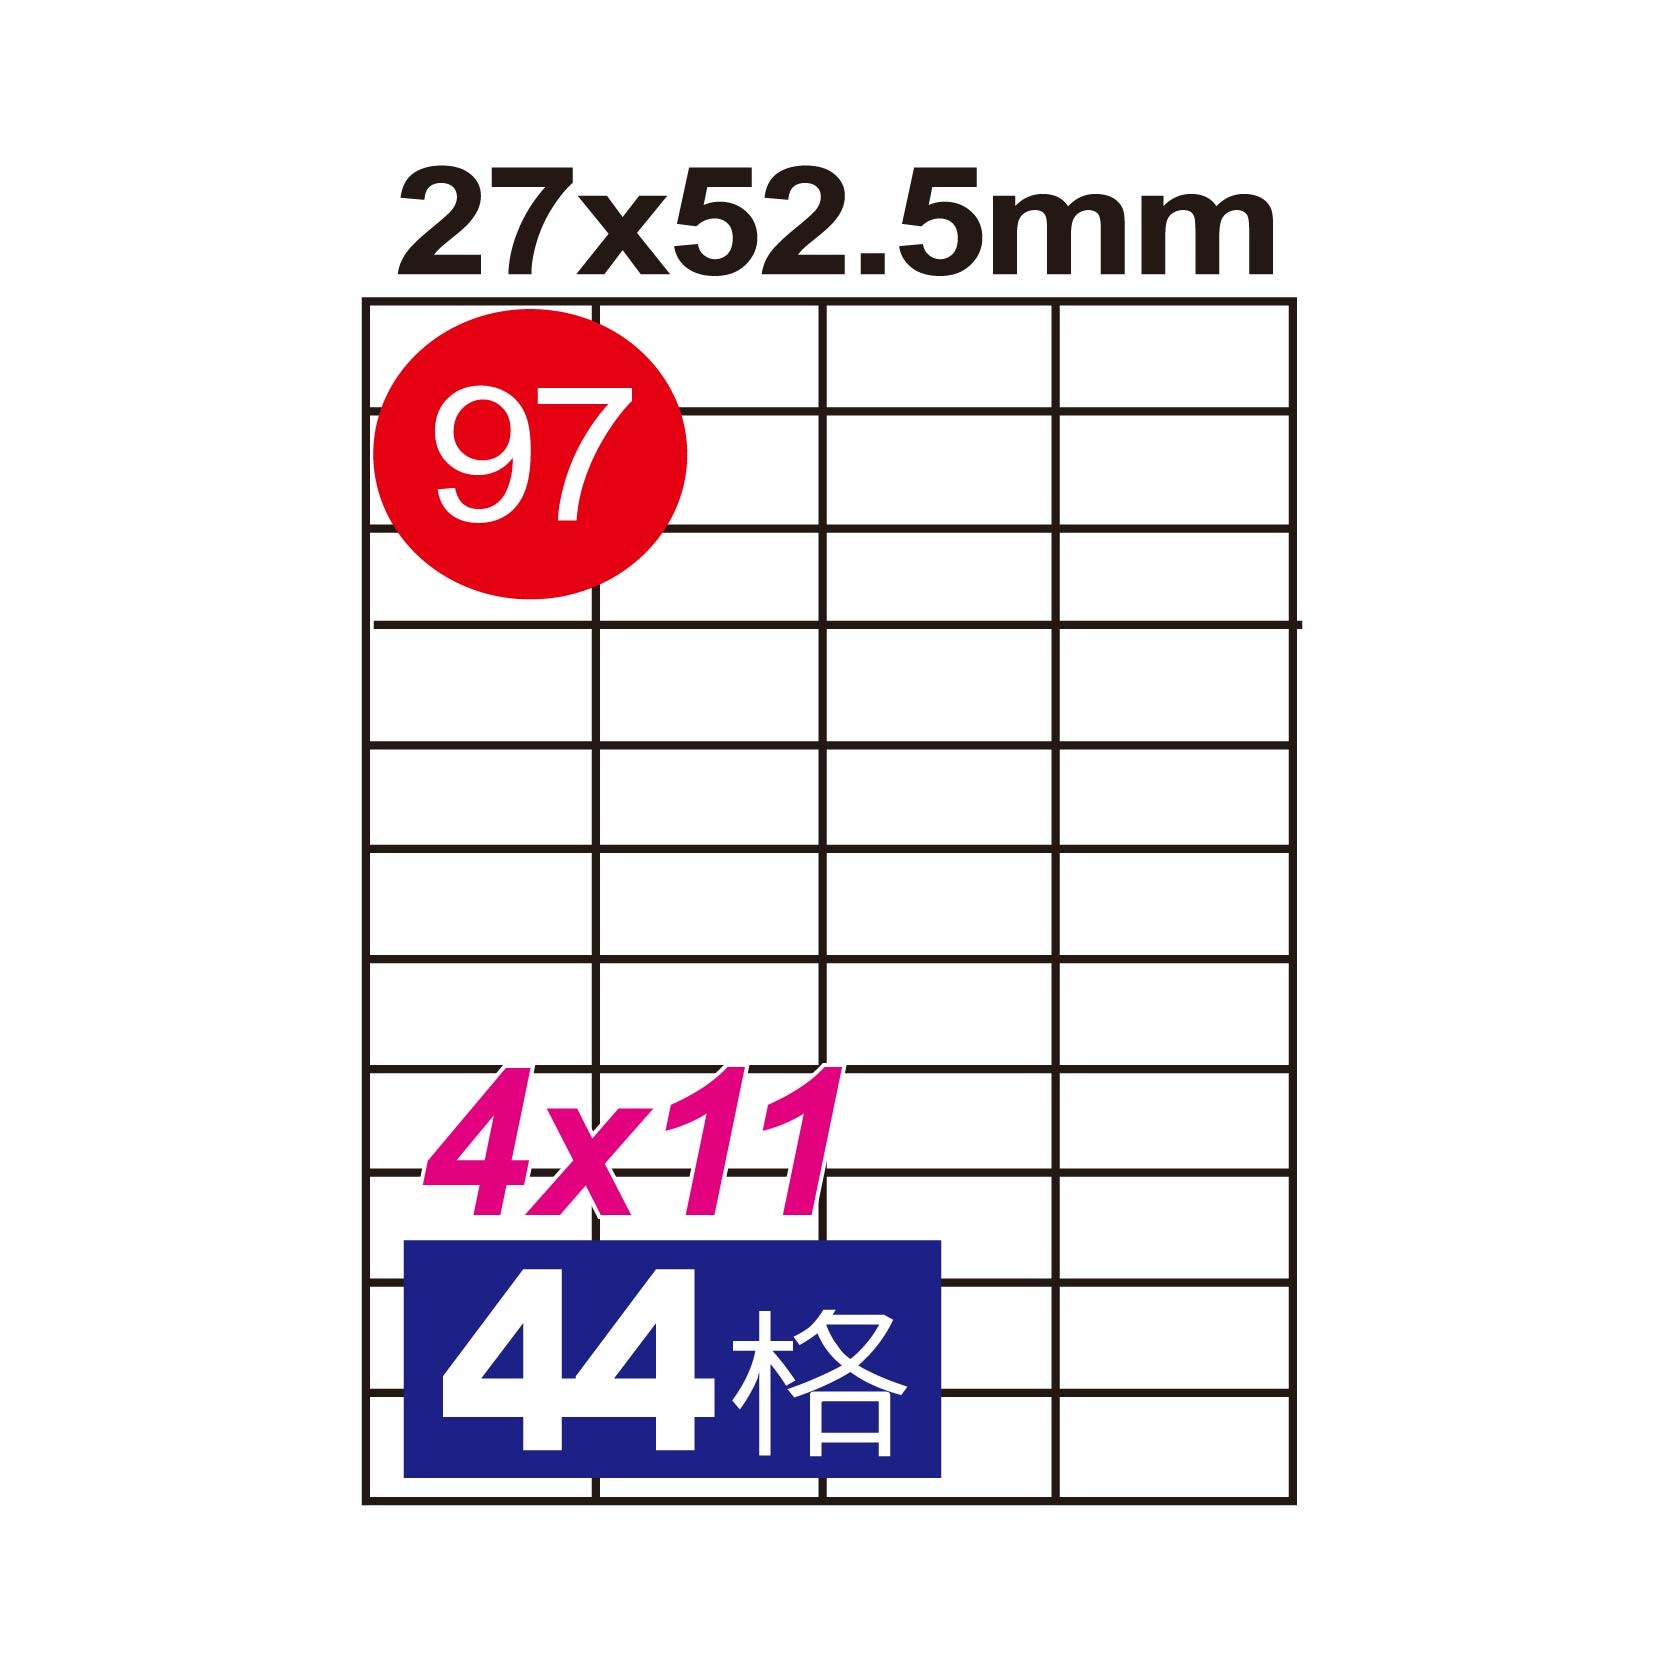 【芥菜籽文具】//鶴屋//三用電腦標籤(97號) B2753 / 44格 (105張/盒) 白色